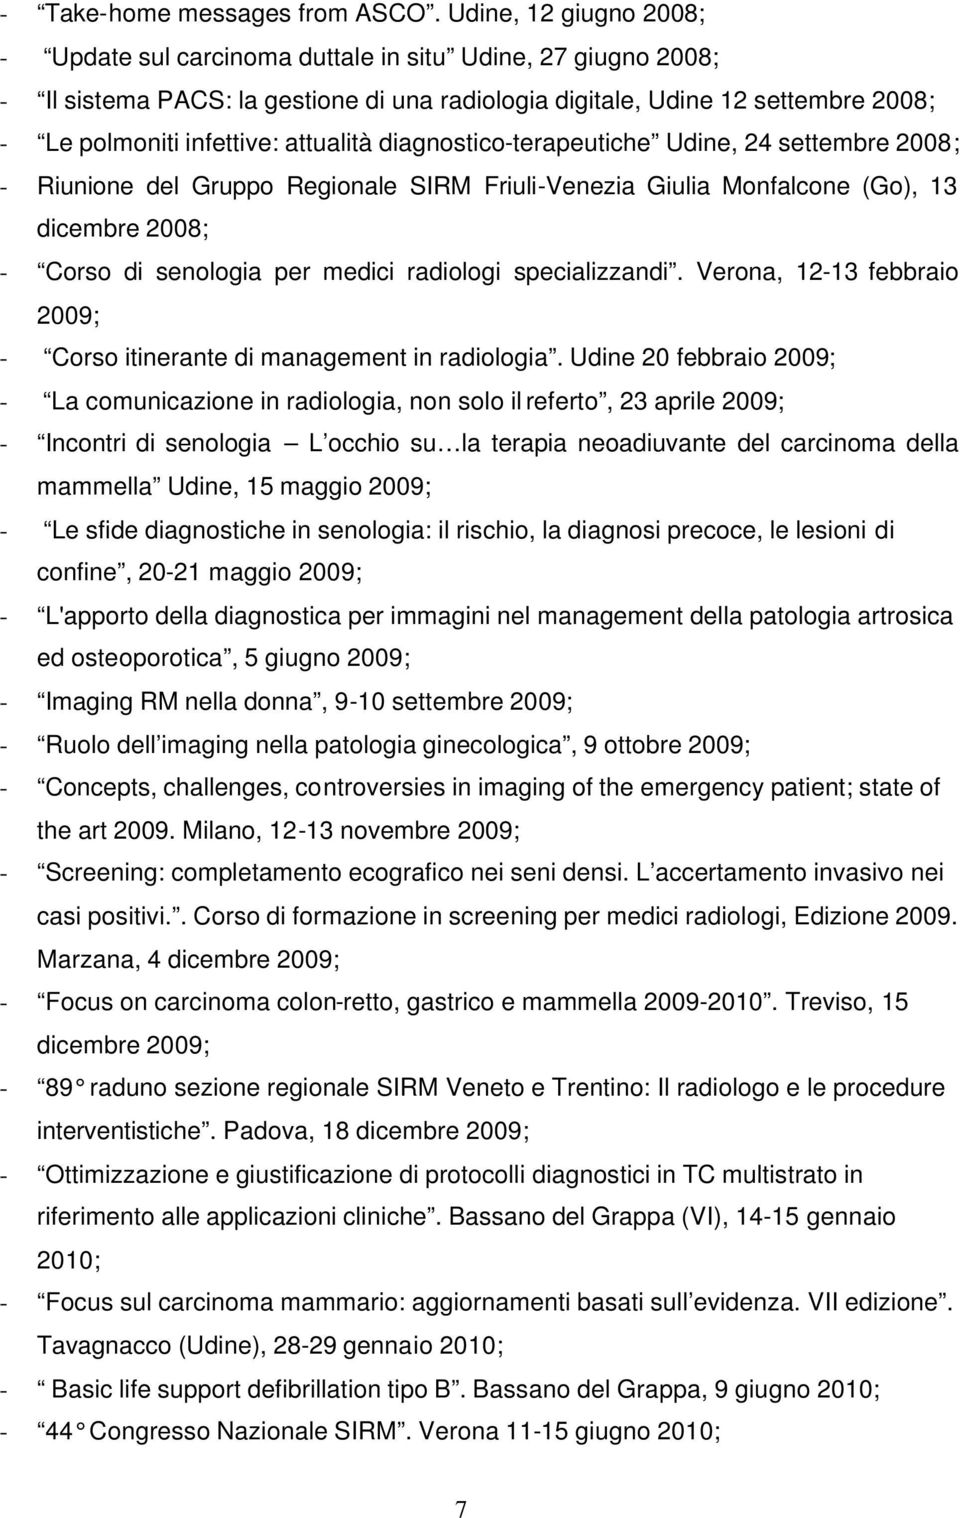 attualità diagnostico-terapeutiche Udine, 24 settembre 2008; - Riunione del Gruppo Regionale SIRM Friuli-Venezia Giulia Monfalcone (Go), 13 dicembre 2008; - Corso di senologia per medici radiologi